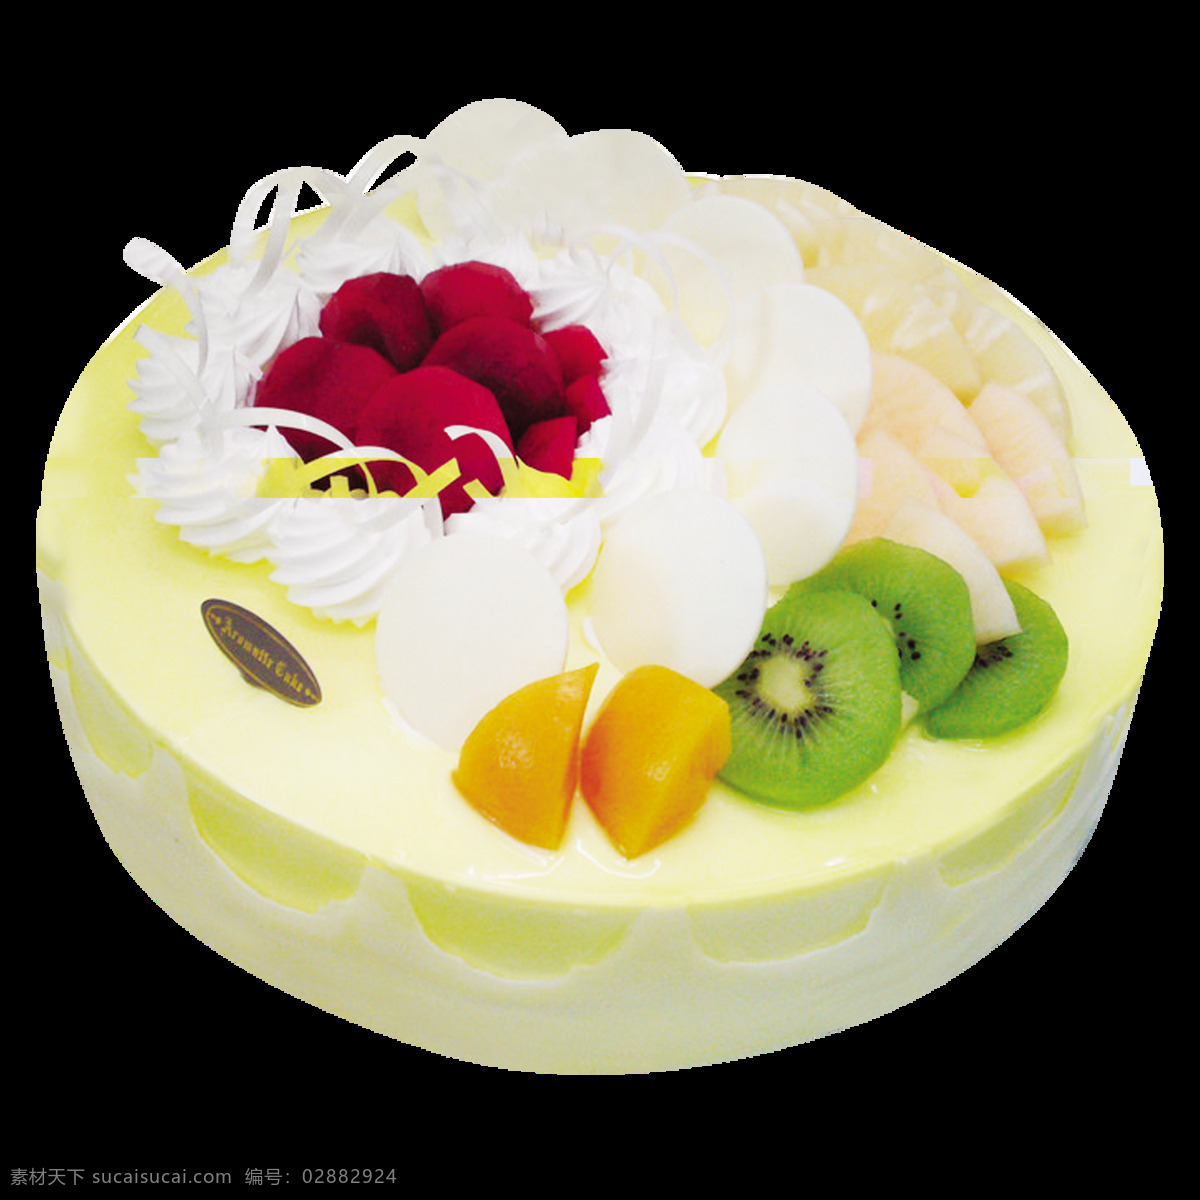 美味 水果 蛋糕 蛋糕图案设计 蛋糕元素 花式蛋糕 快乐 美食 慕斯蛋糕 透明元素 图案设计